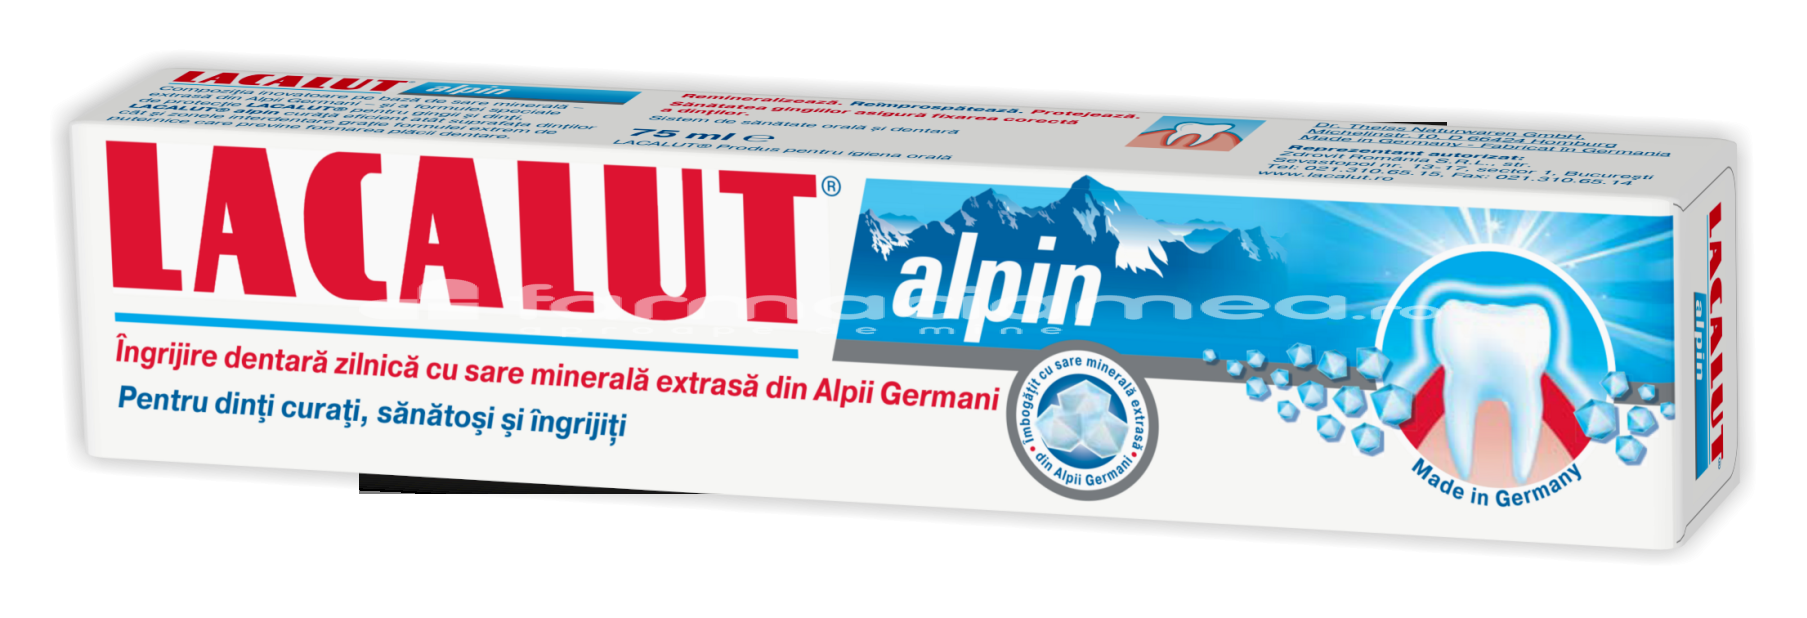 Pastă dinţi - Lacalut Alpin pasta dinti, 75 ml, farmaciamea.ro